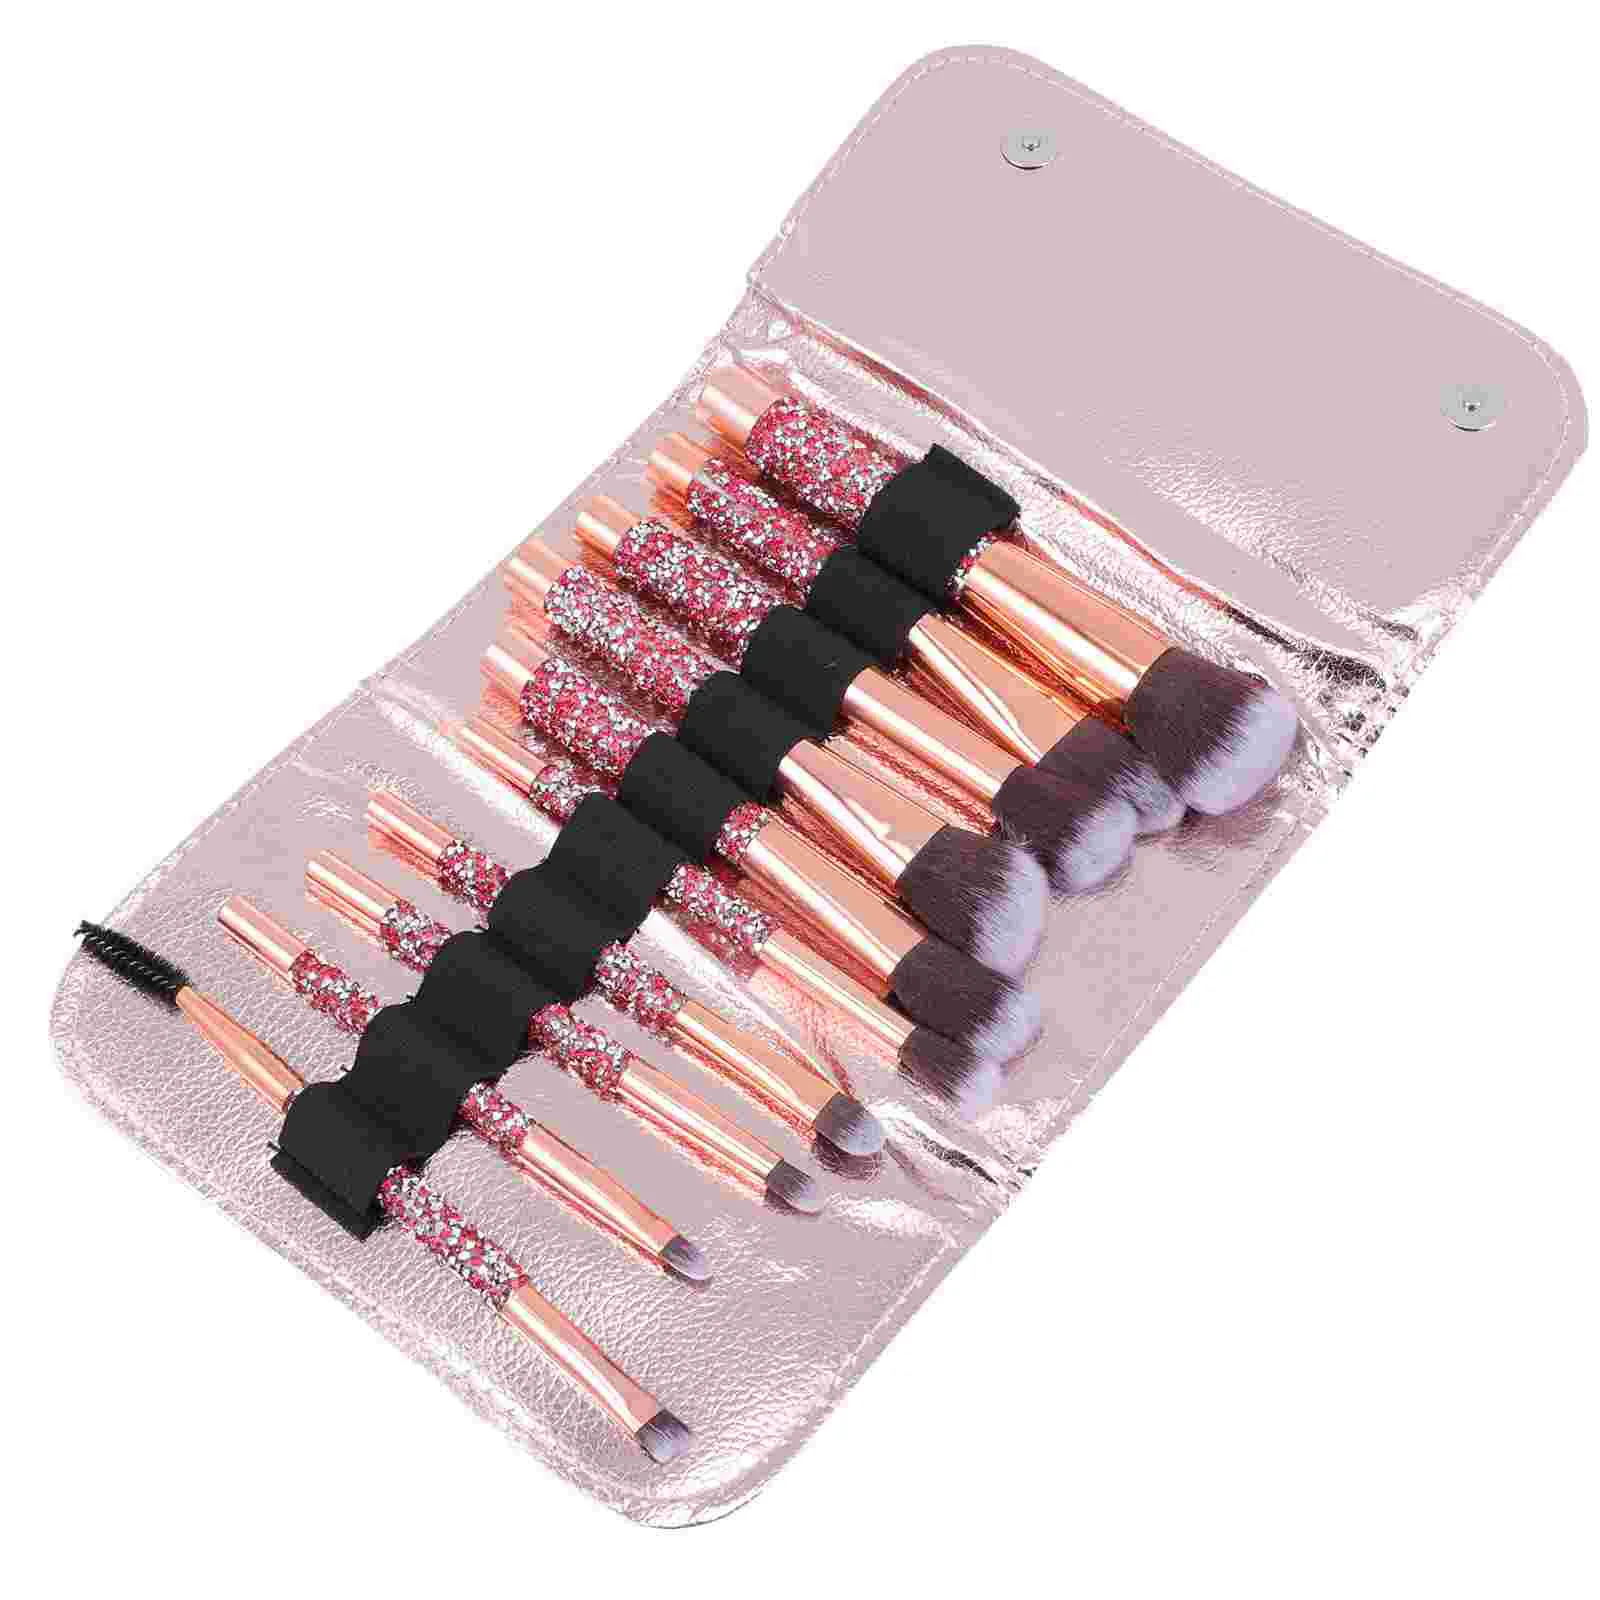 

Brush Makeup Brushes Cosmeticface Set Blush Concealer Handheld Eyeshadow Kabuki Blending Foundation Portable Kit Supplies Loose